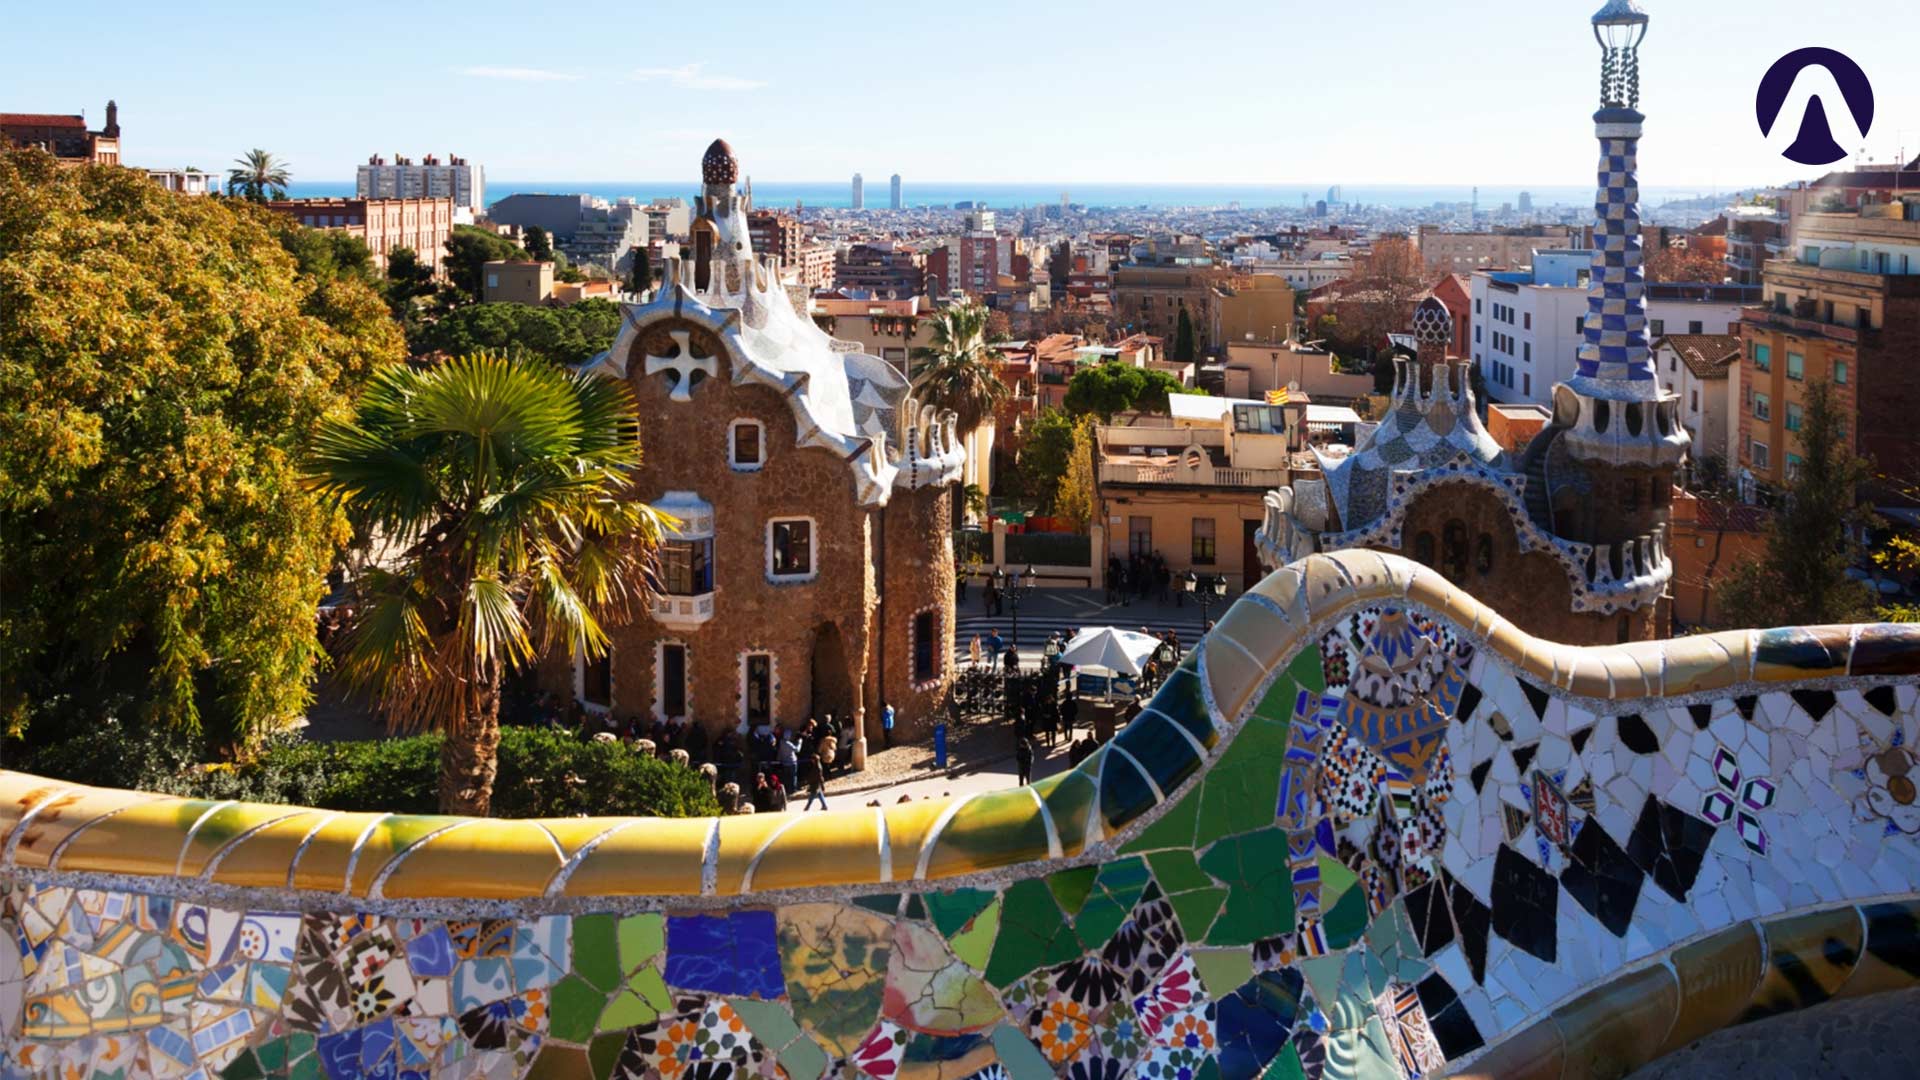 Agencia de viajes internacionales - Vuelos a España desde valencia